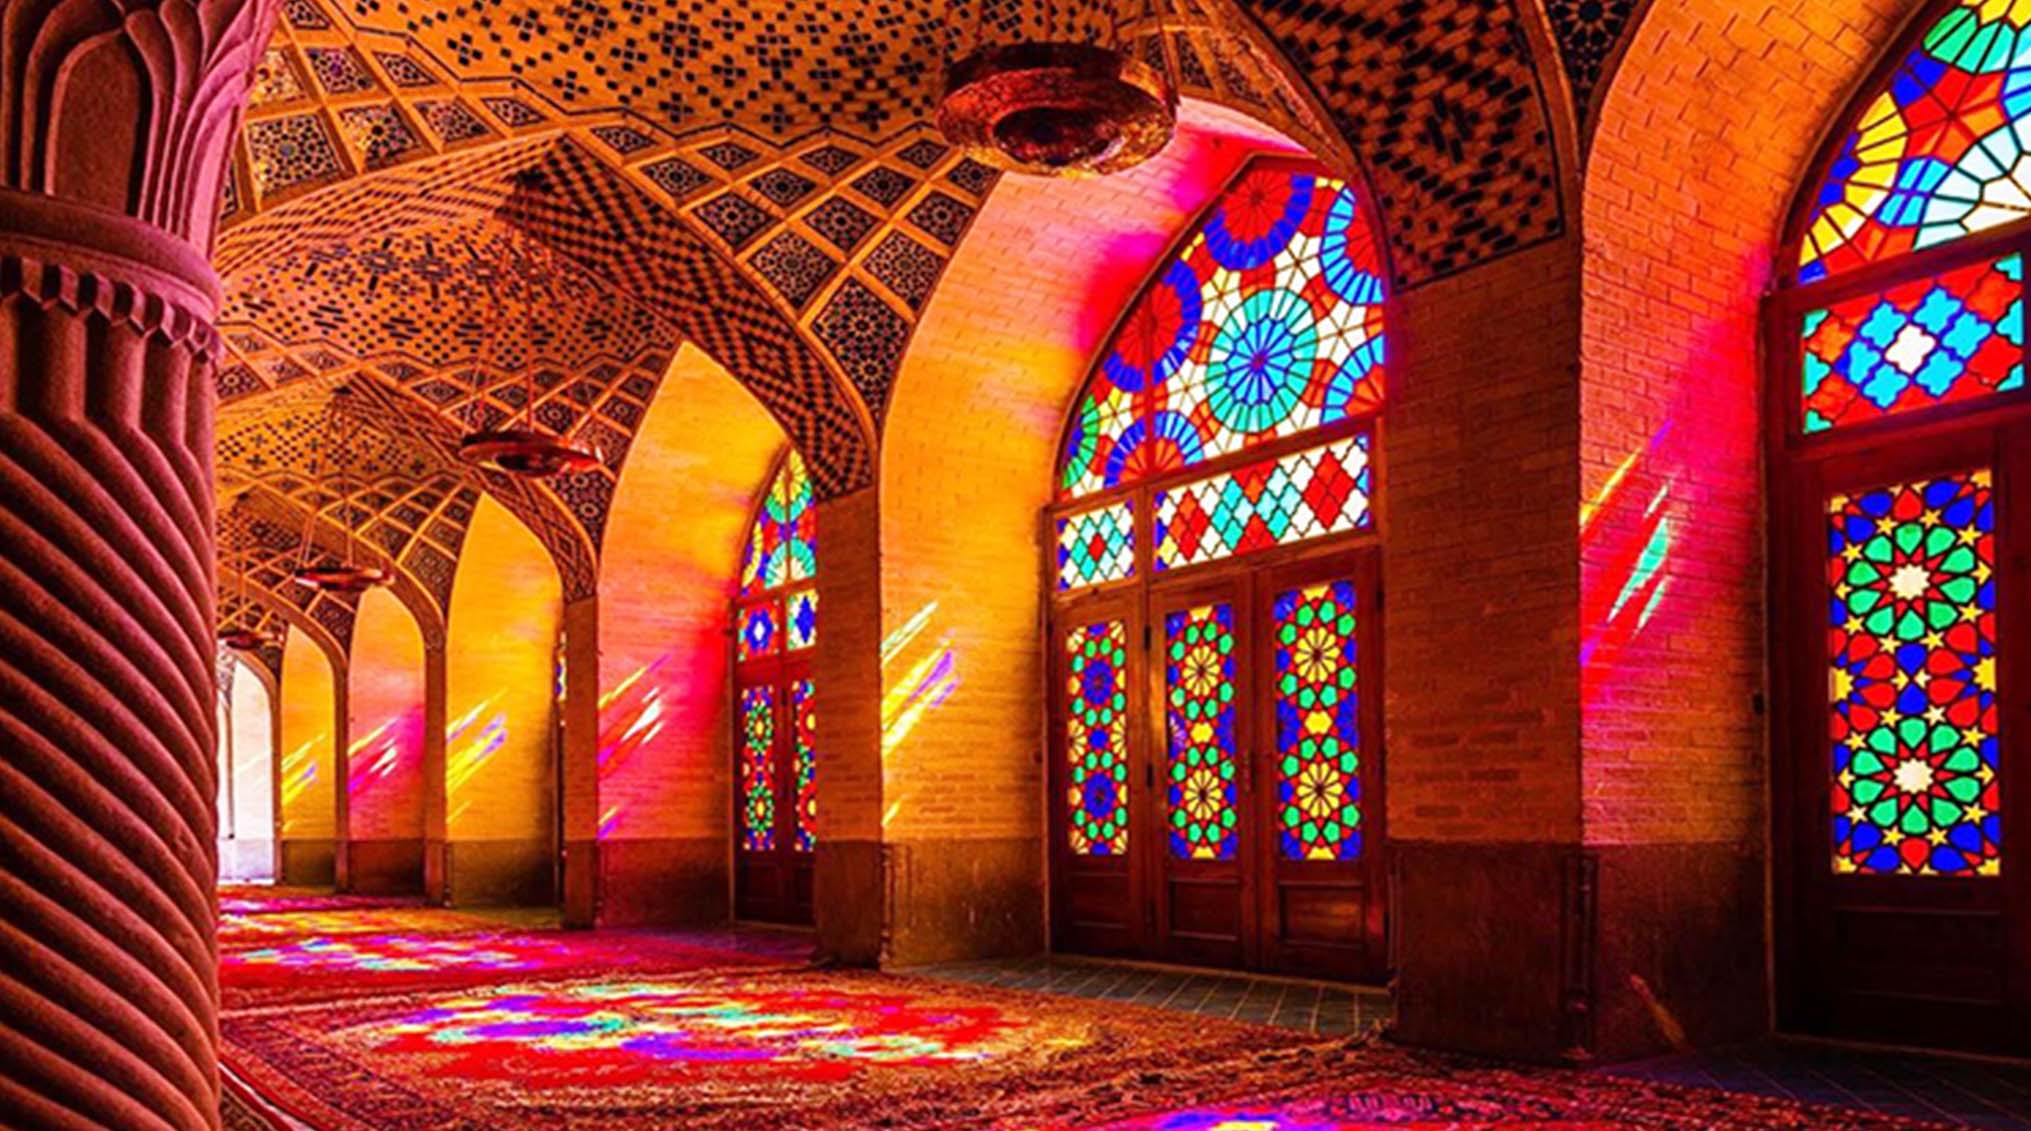 مسجد نصیر الملک شیراز، مسجد رنگین ایران